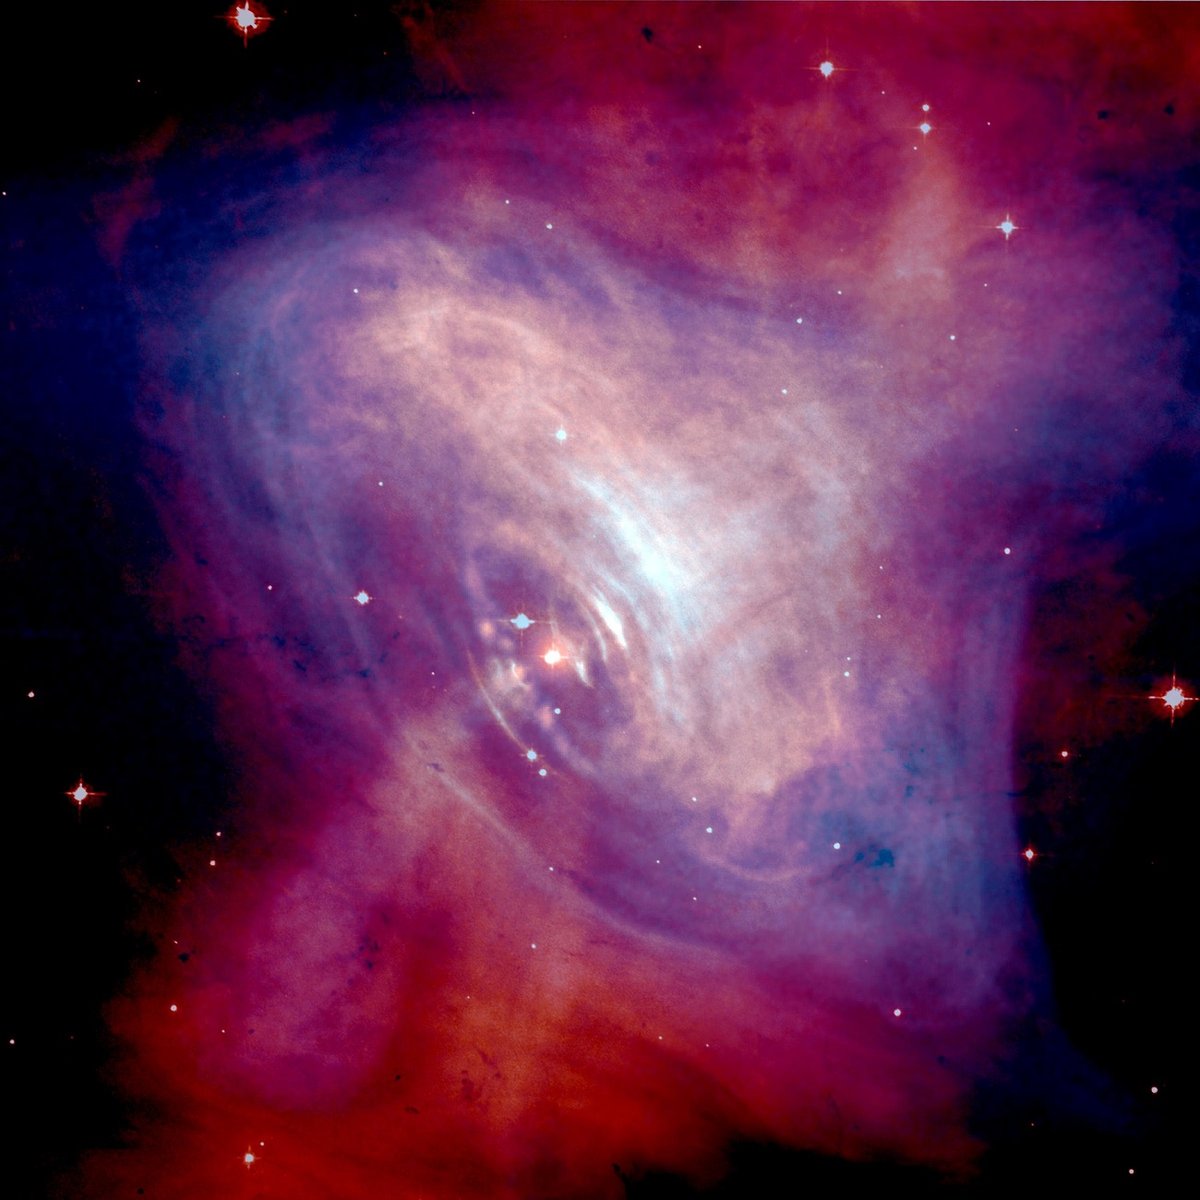 Ten pulsar jest w wieku nastoletnim. Niezwykle młody obiekt zaobserwowany na niebie